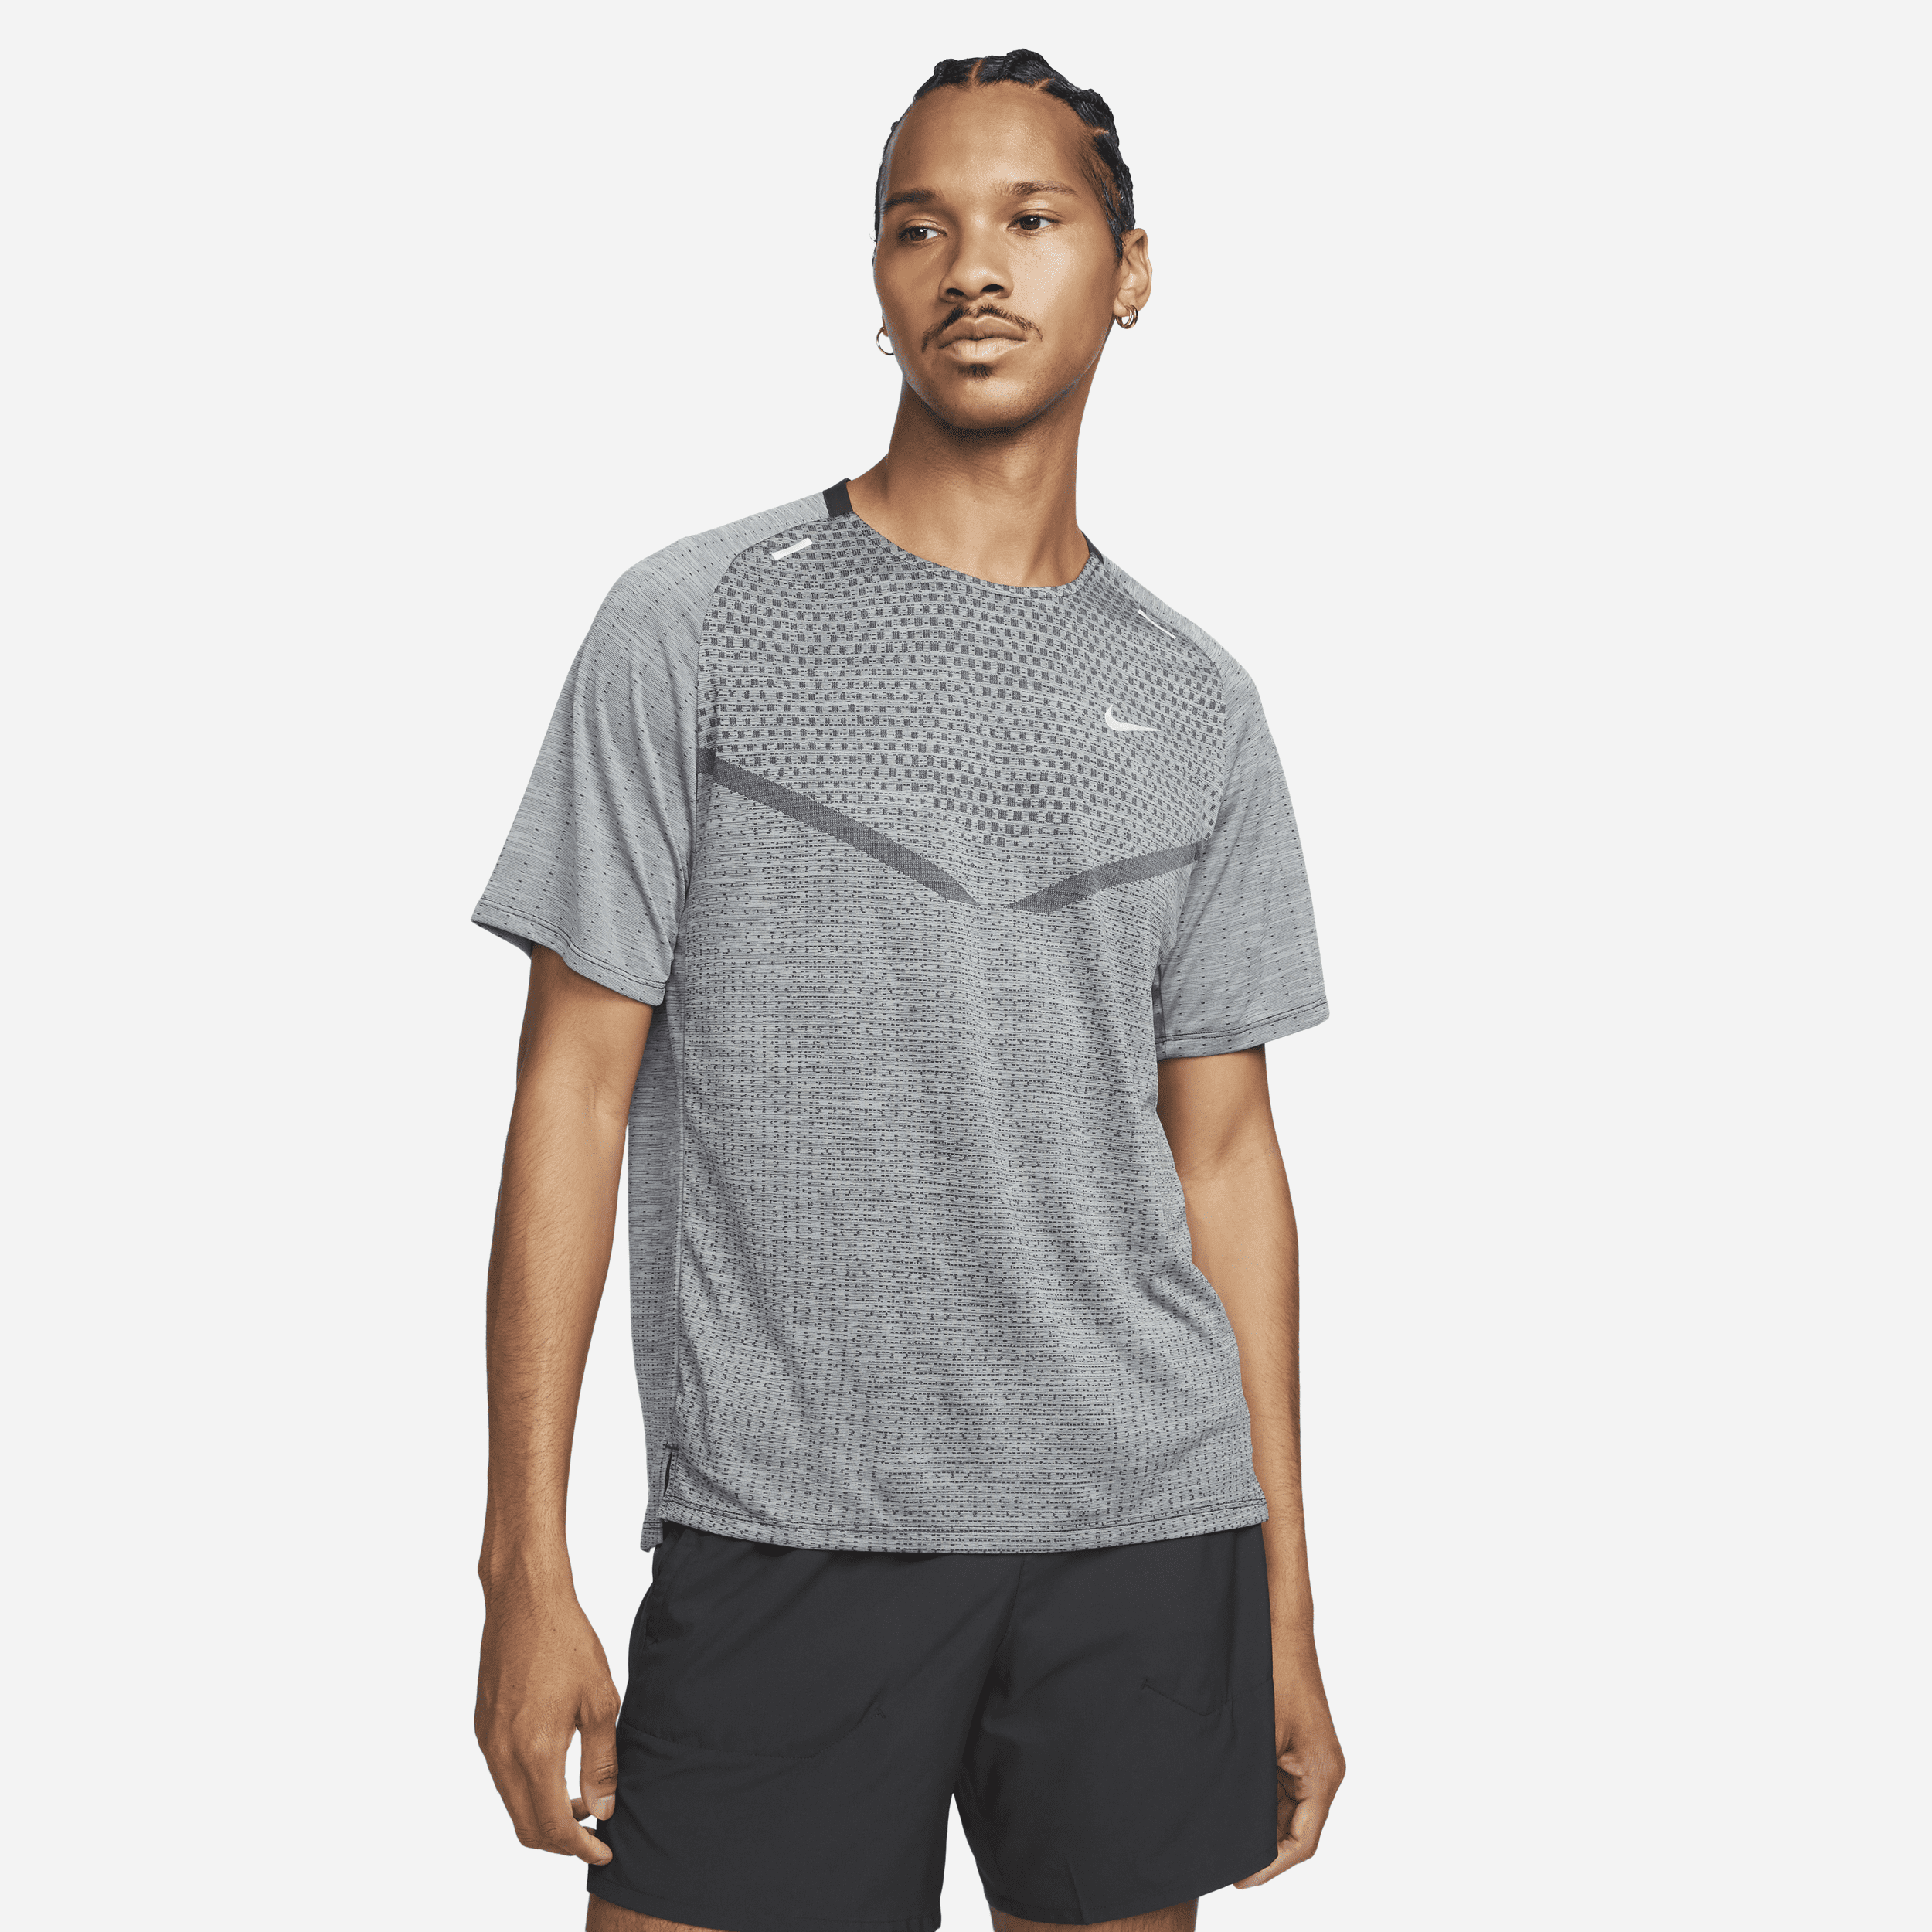 Nike TechKnit Dri-FIT ADV hardlooptop met korte mouwen voor heren - Zwart